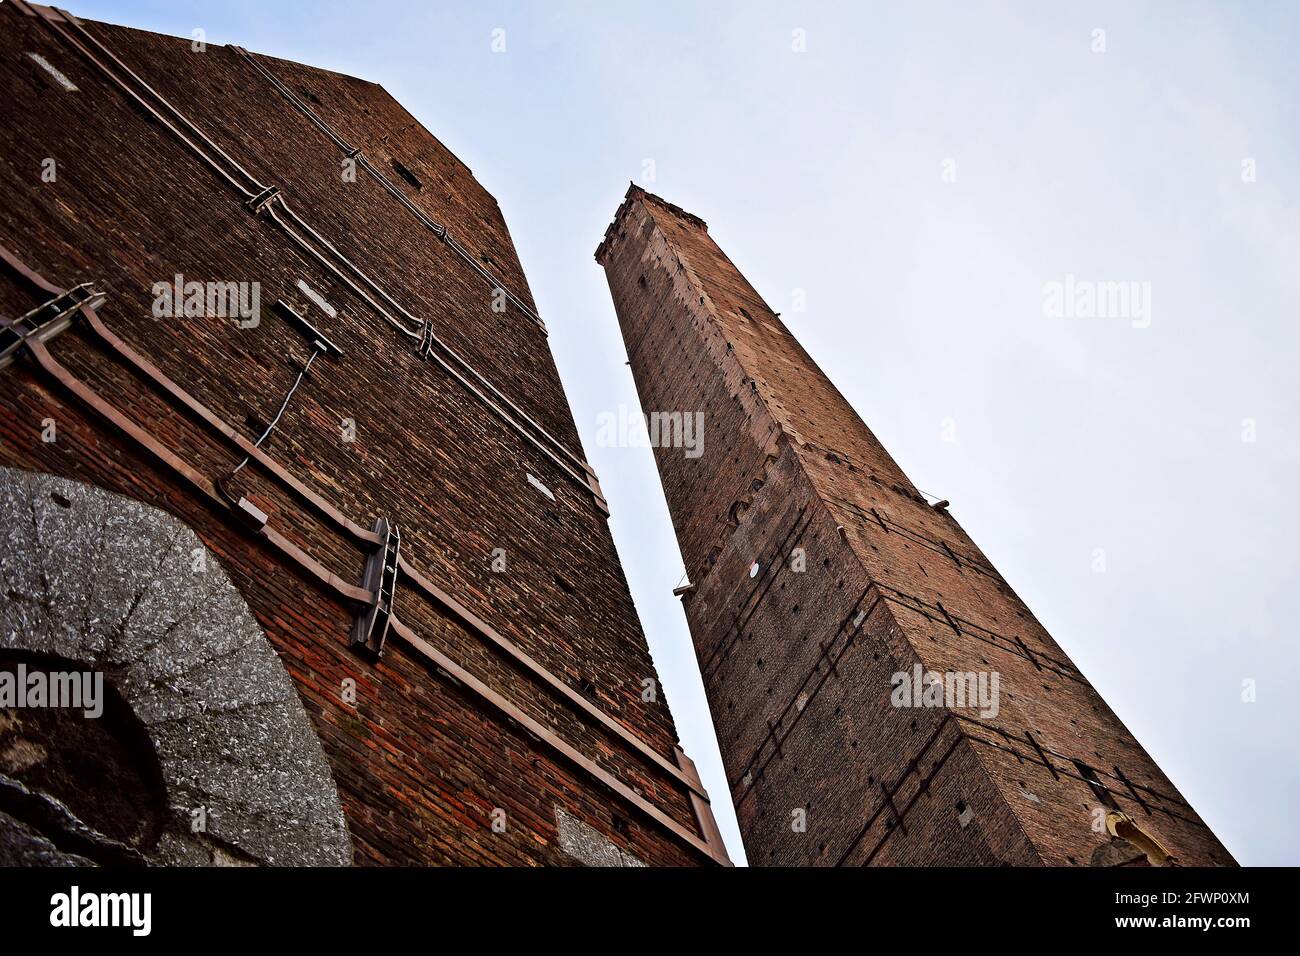 BOLOGNA, ITALIA - 08 febbraio 2016: Le due Torre, o le due Torri di Bologna, monumenti e simboli della città di Bologna. Foto scattate su una bella w Foto Stock